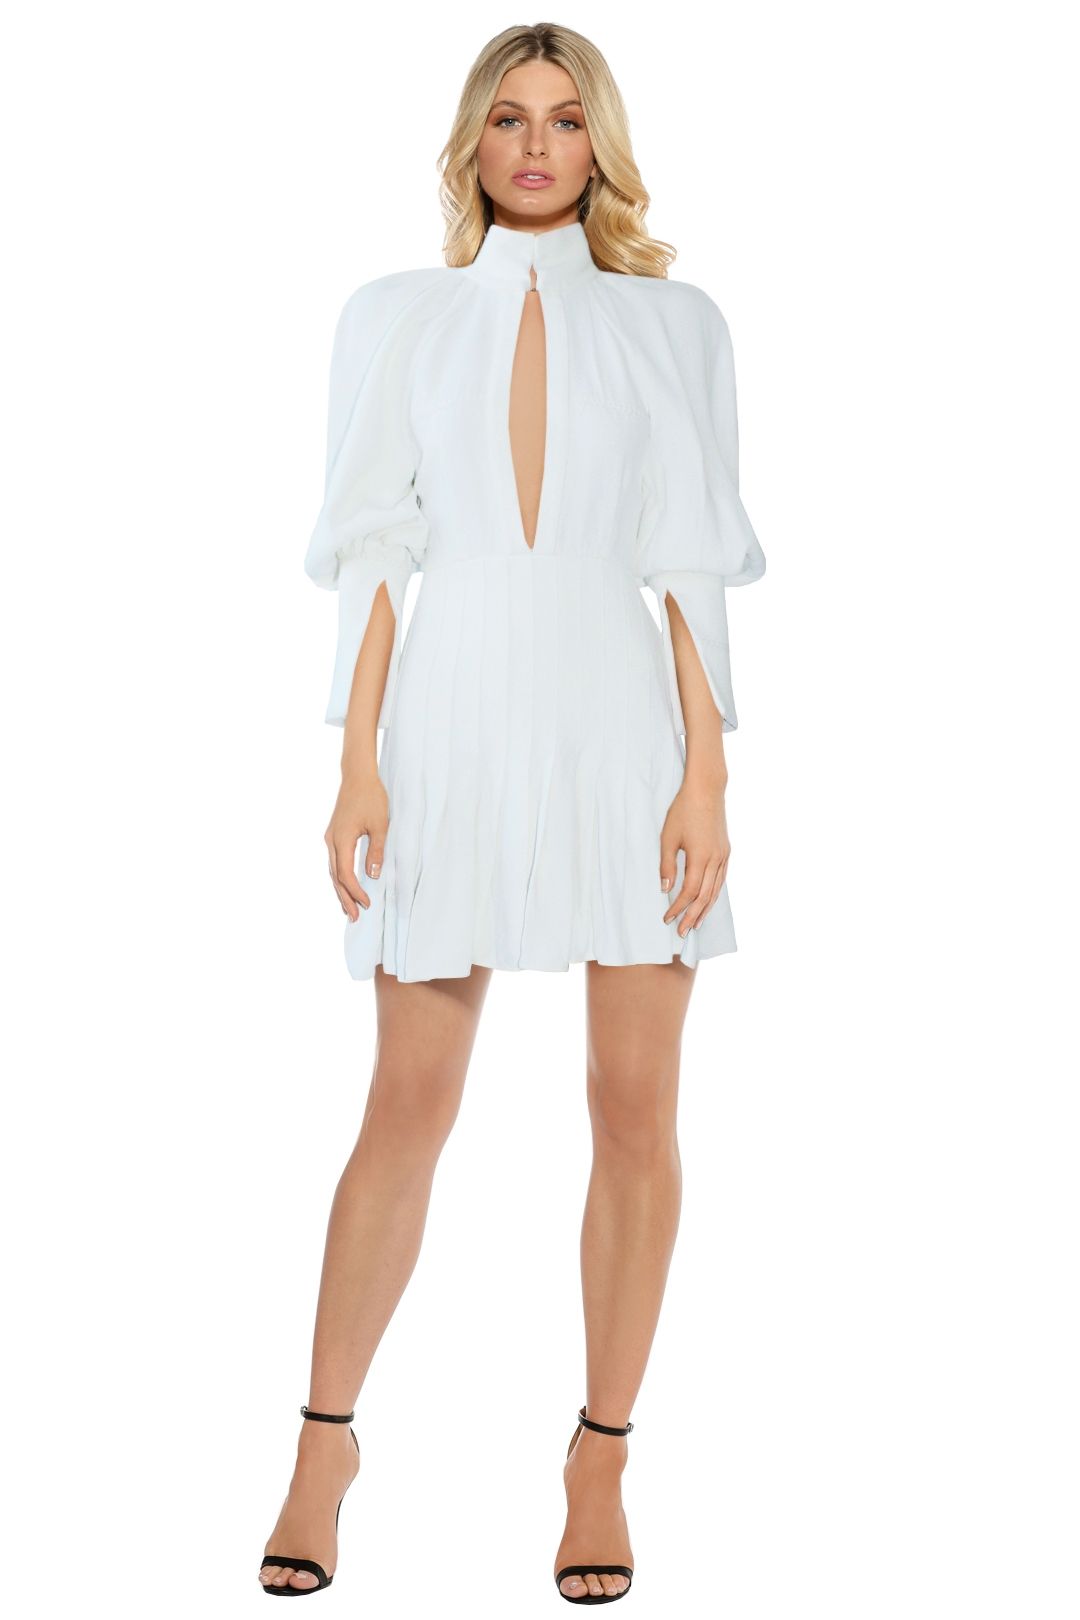 Ellery - Butler Voluminous Sleeve Dress - White - Front